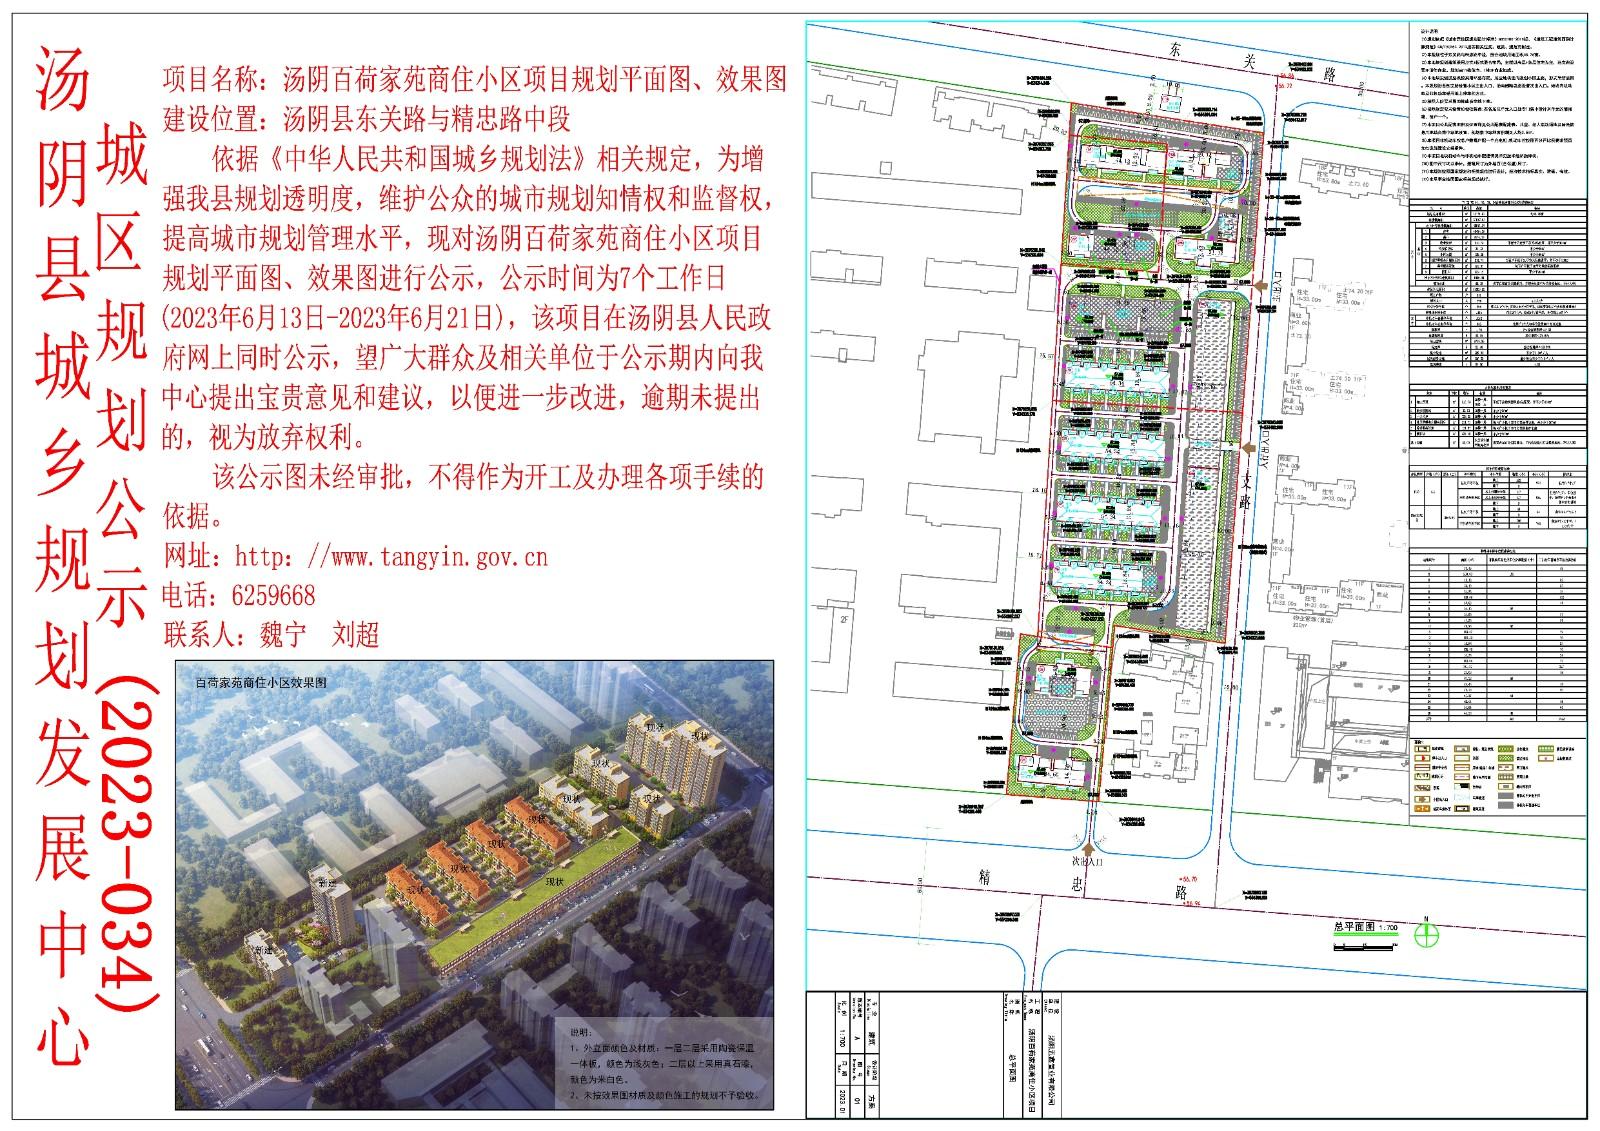 汤阴县城乡规划发展中心规划批后公示2023年410523202300032（建筑）号--壹号院